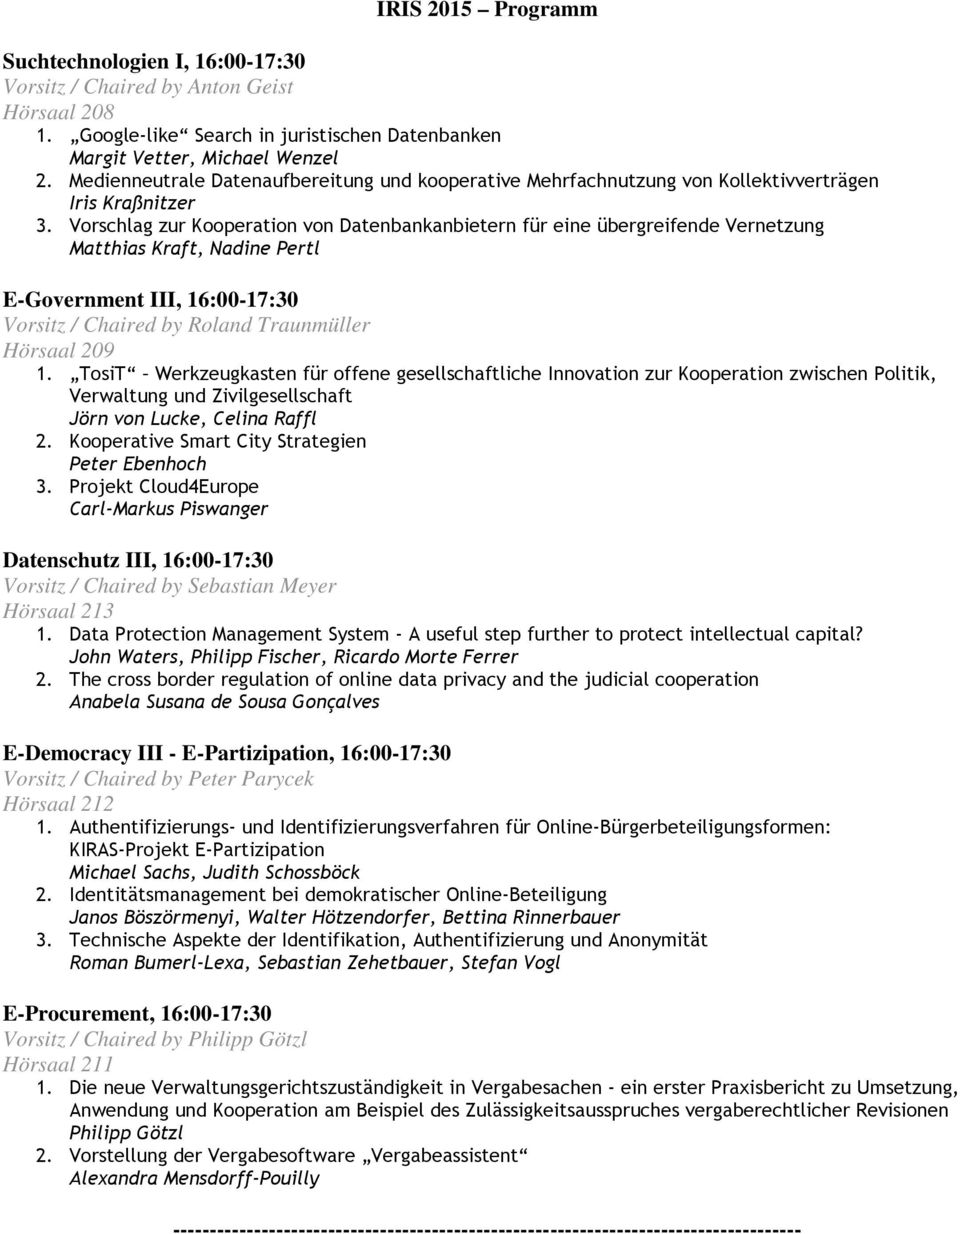 Vorschlag zur Kooperation von Datenbankanbietern für eine übergreifende Vernetzung Matthias Kraft, Nadine Pertl E-Government III, 16:00-17:30 Vorsitz / Chaired by Roland Traunmüller 1.